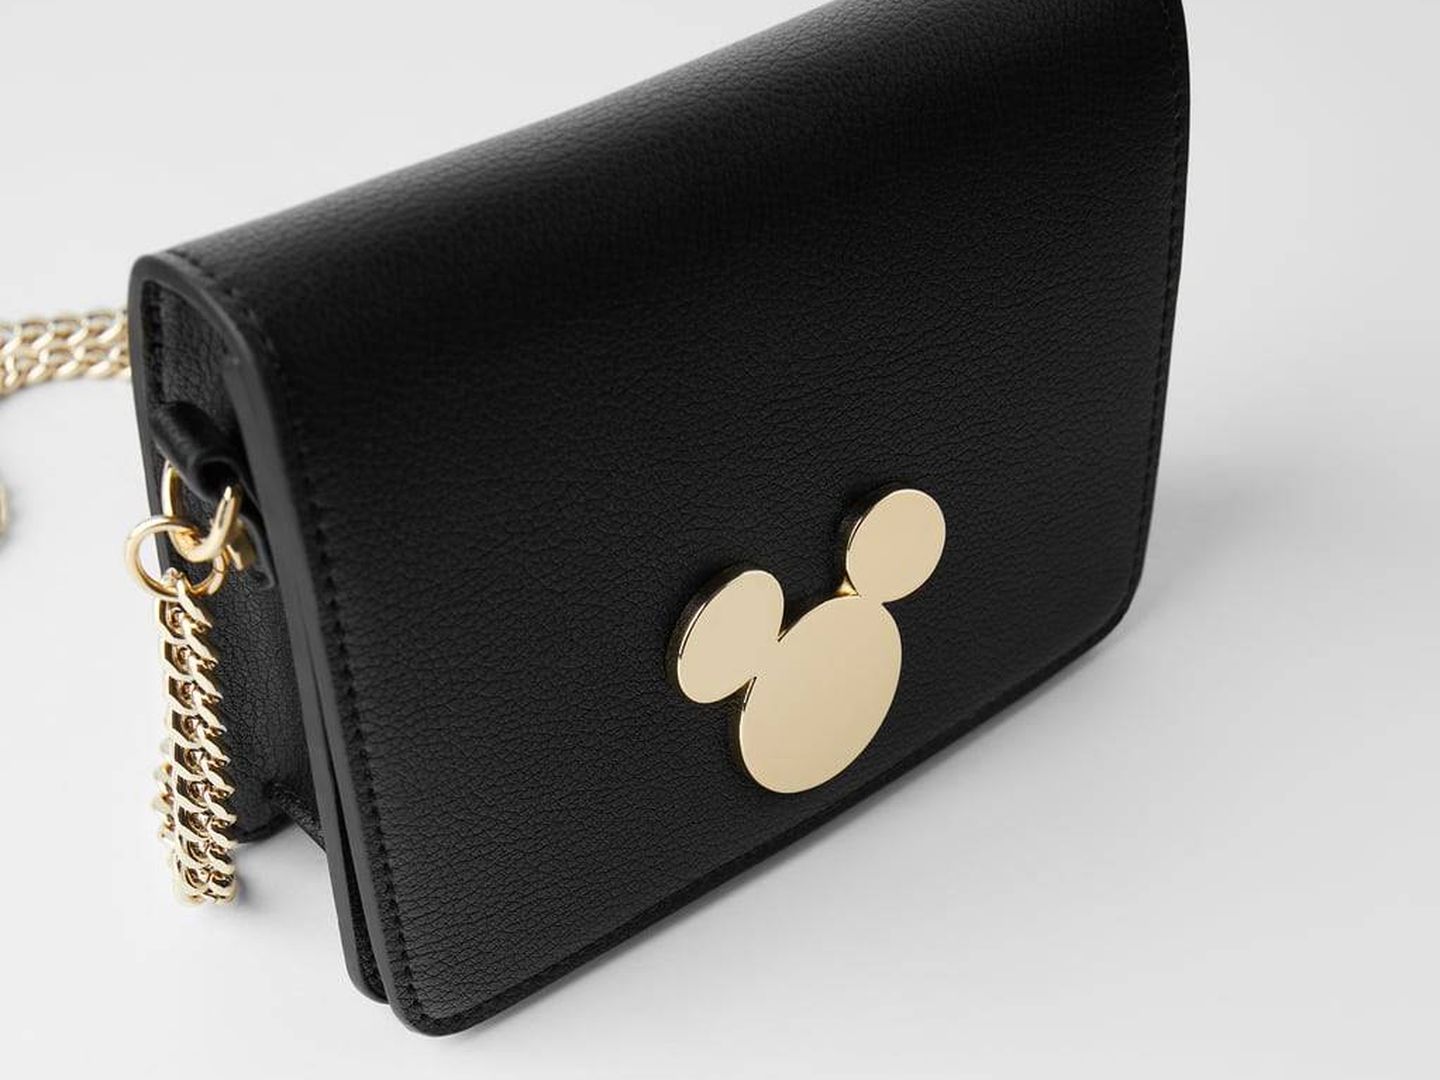 El bolso de Zara con hebilla de Mickey Mouse. (Cortesía)